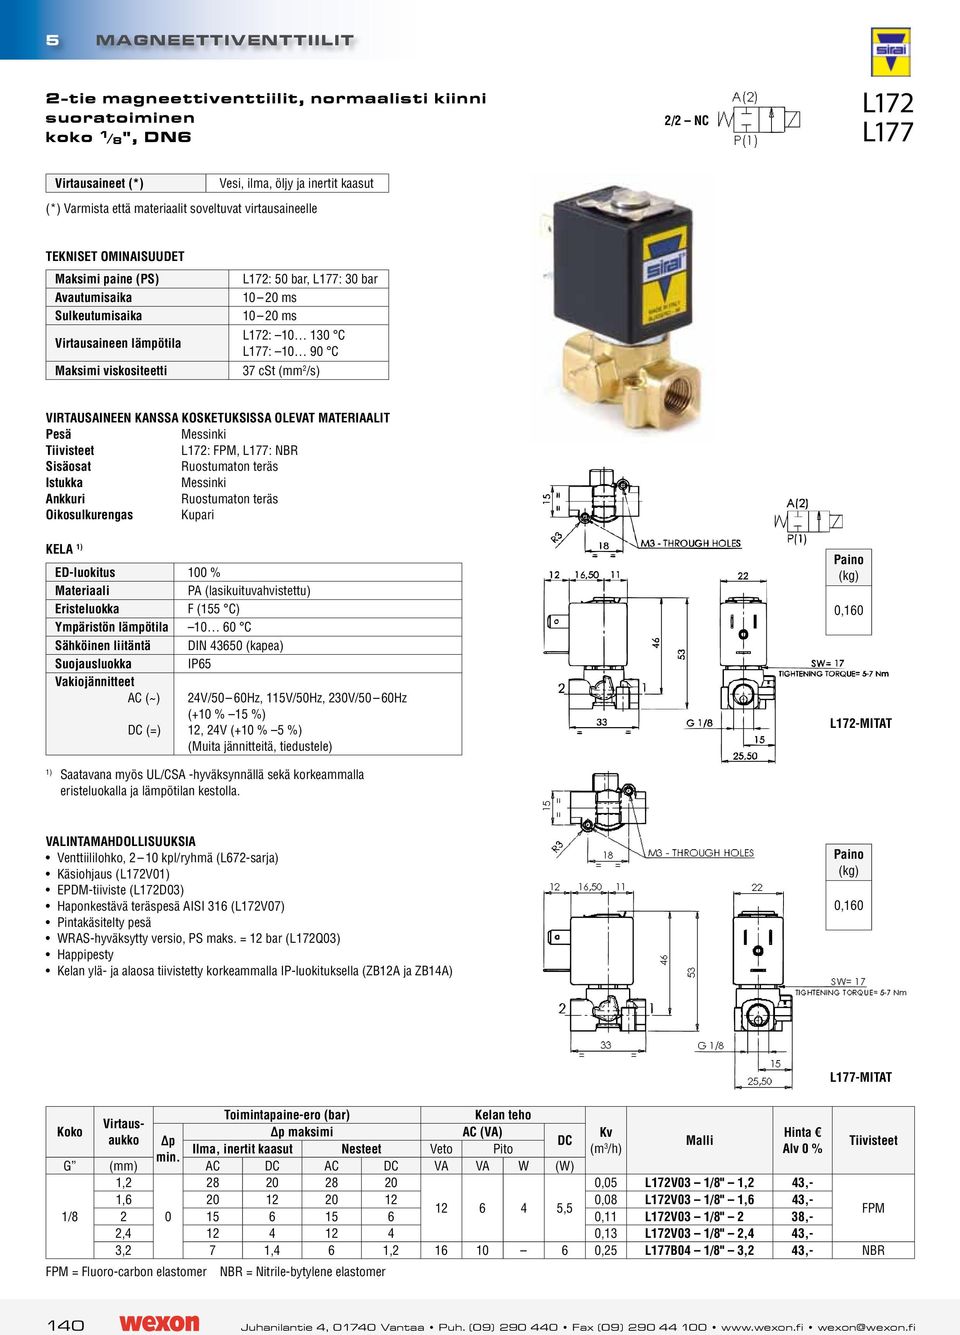 Sähköinen liitäntä DIN 43650 (kapea) (=) 24V/50 60Hz, 115V/50Hz, 230V/50 60Hz (+ % 15 %), 24V (+ % 5 %) 0,0 L172-MITAT 1) Saatavana myös UL/CSA -hyväksynnällä sekä korkeammalla eristeluokalla ja